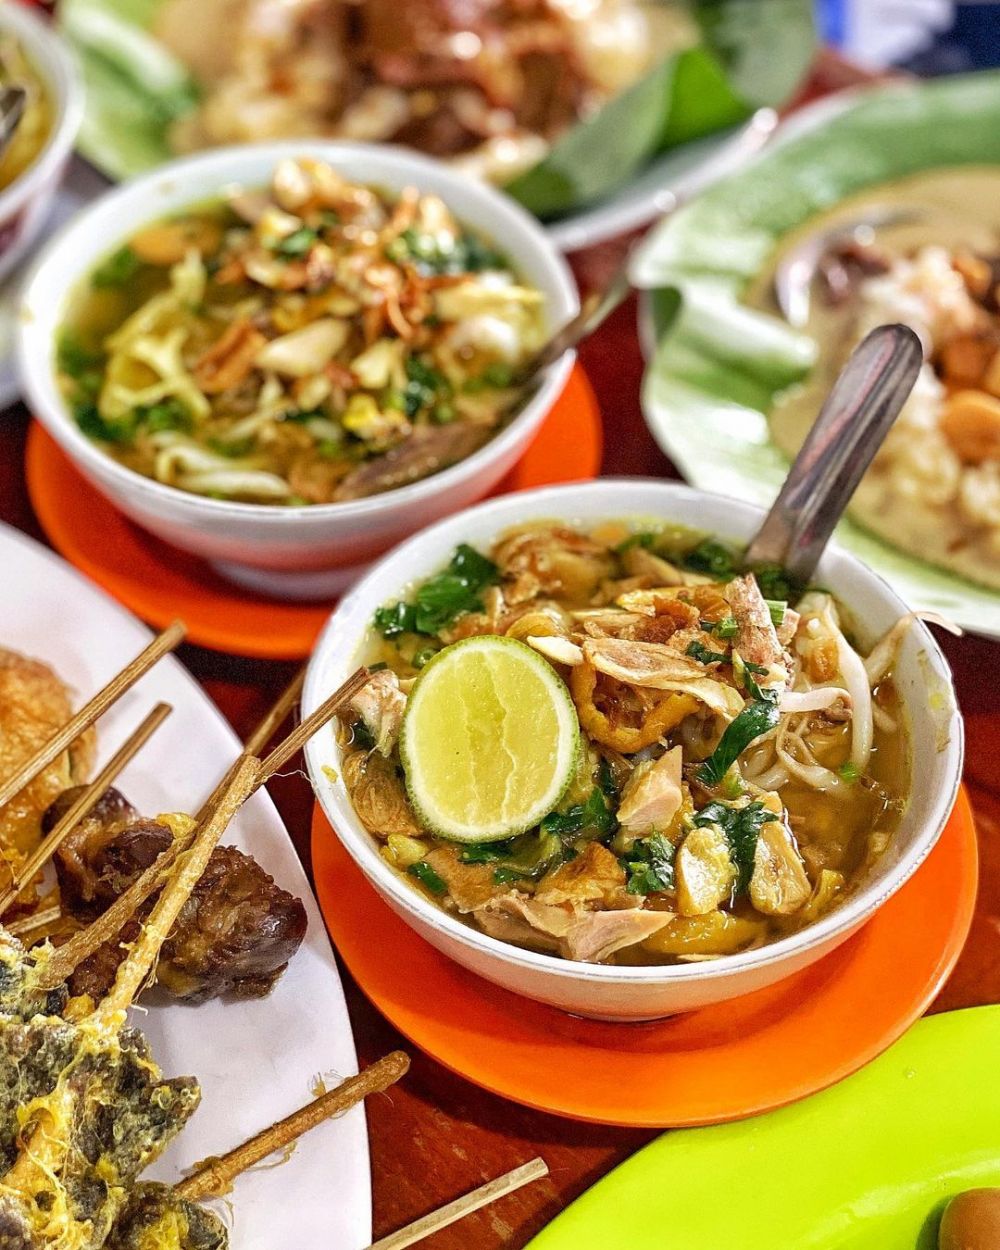 Menu Makan Siang yang Jadi Andalan Orang Indonesia